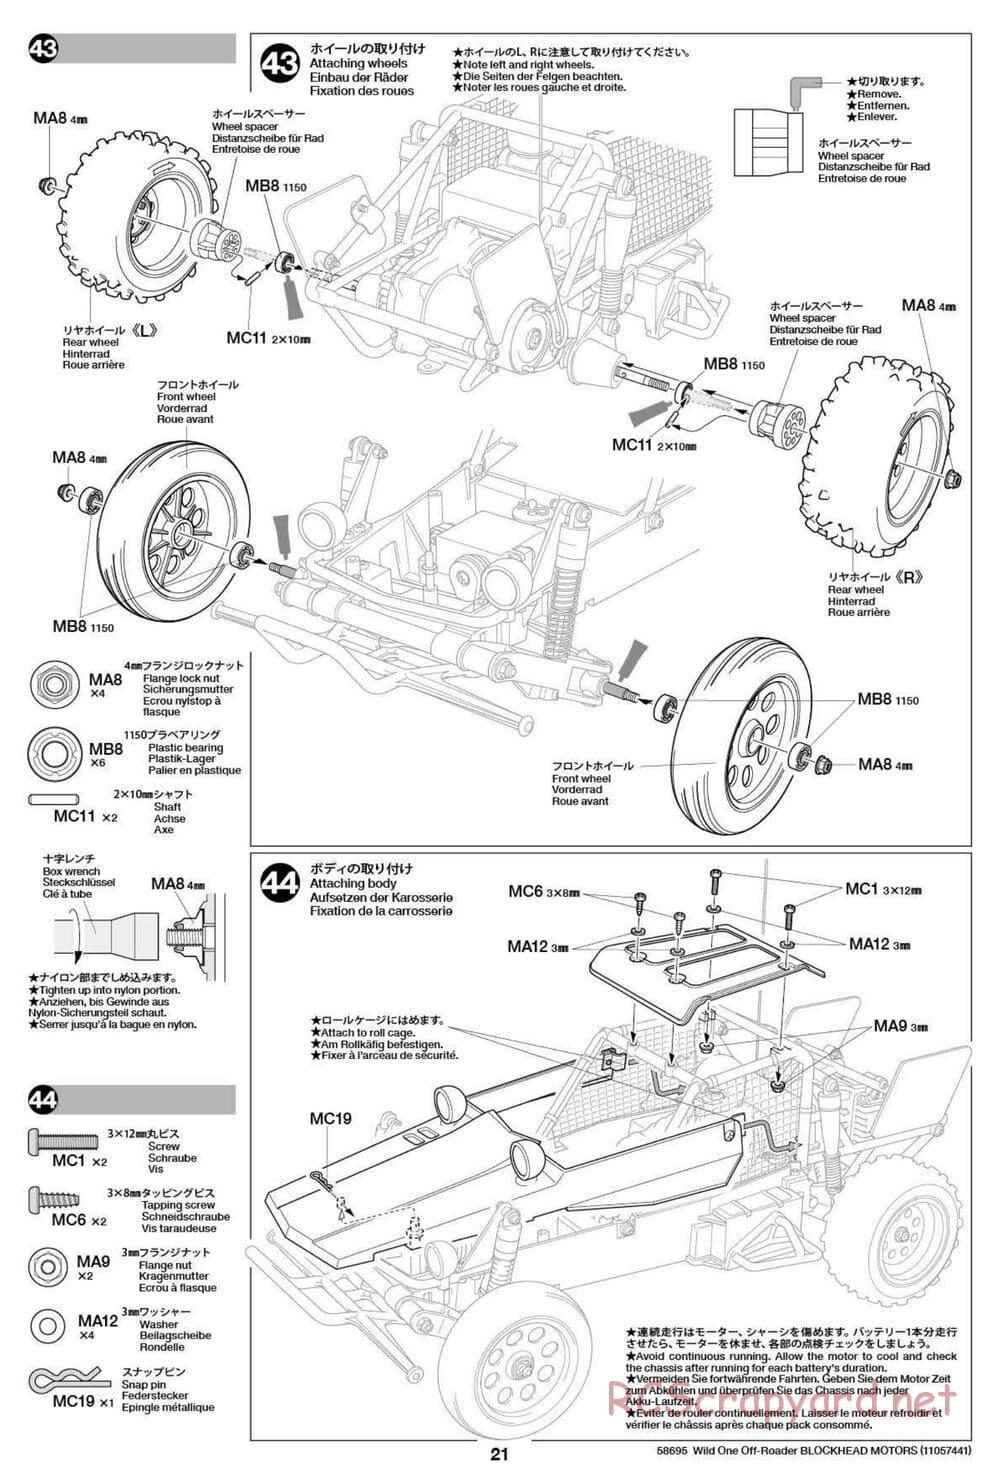 Tamiya - Wild One Off Roader Blockhead Motors - FAV Chassis - Manual - Page 21